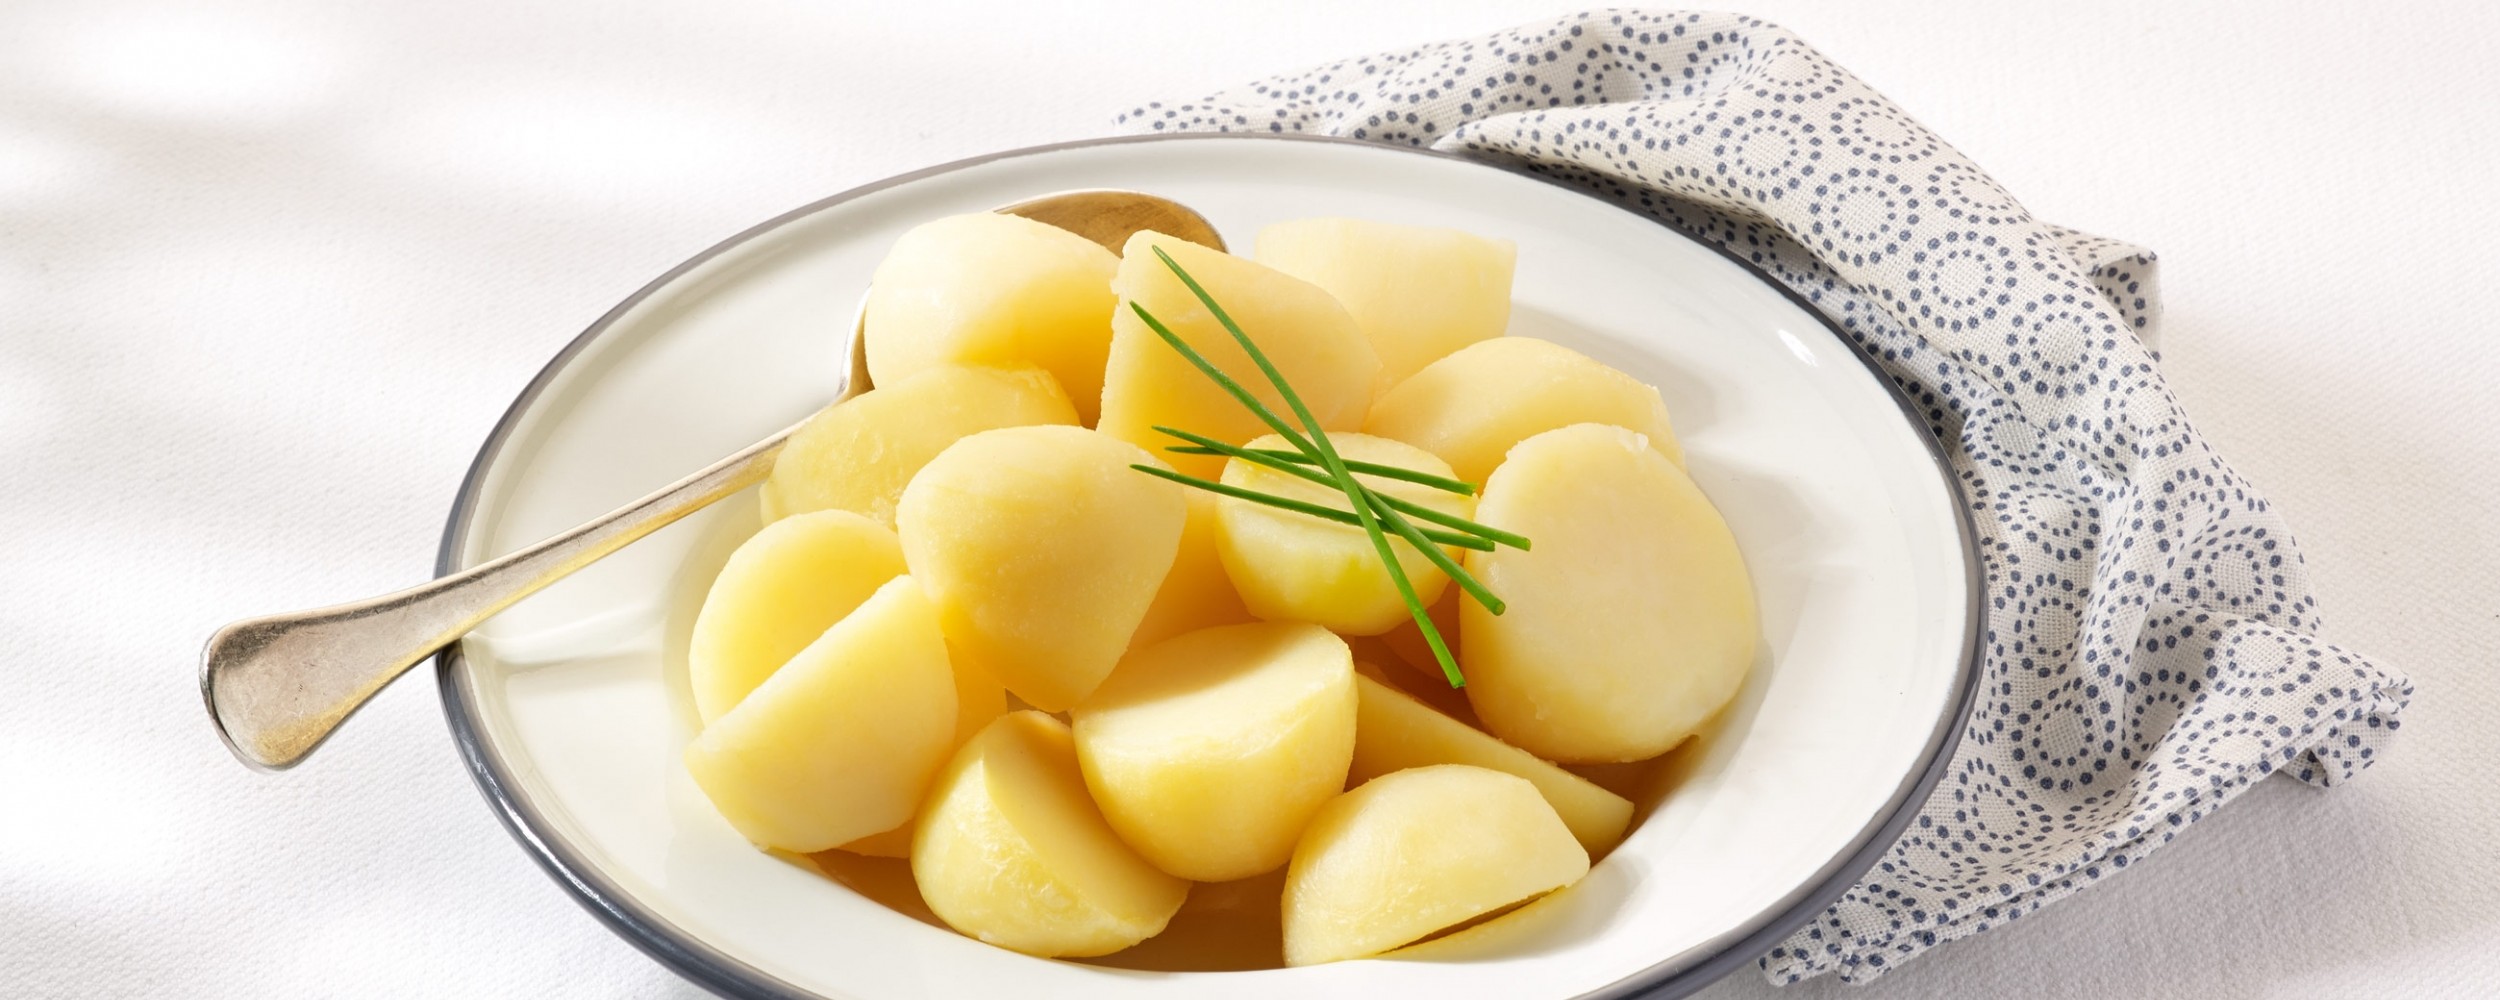 Potato halves